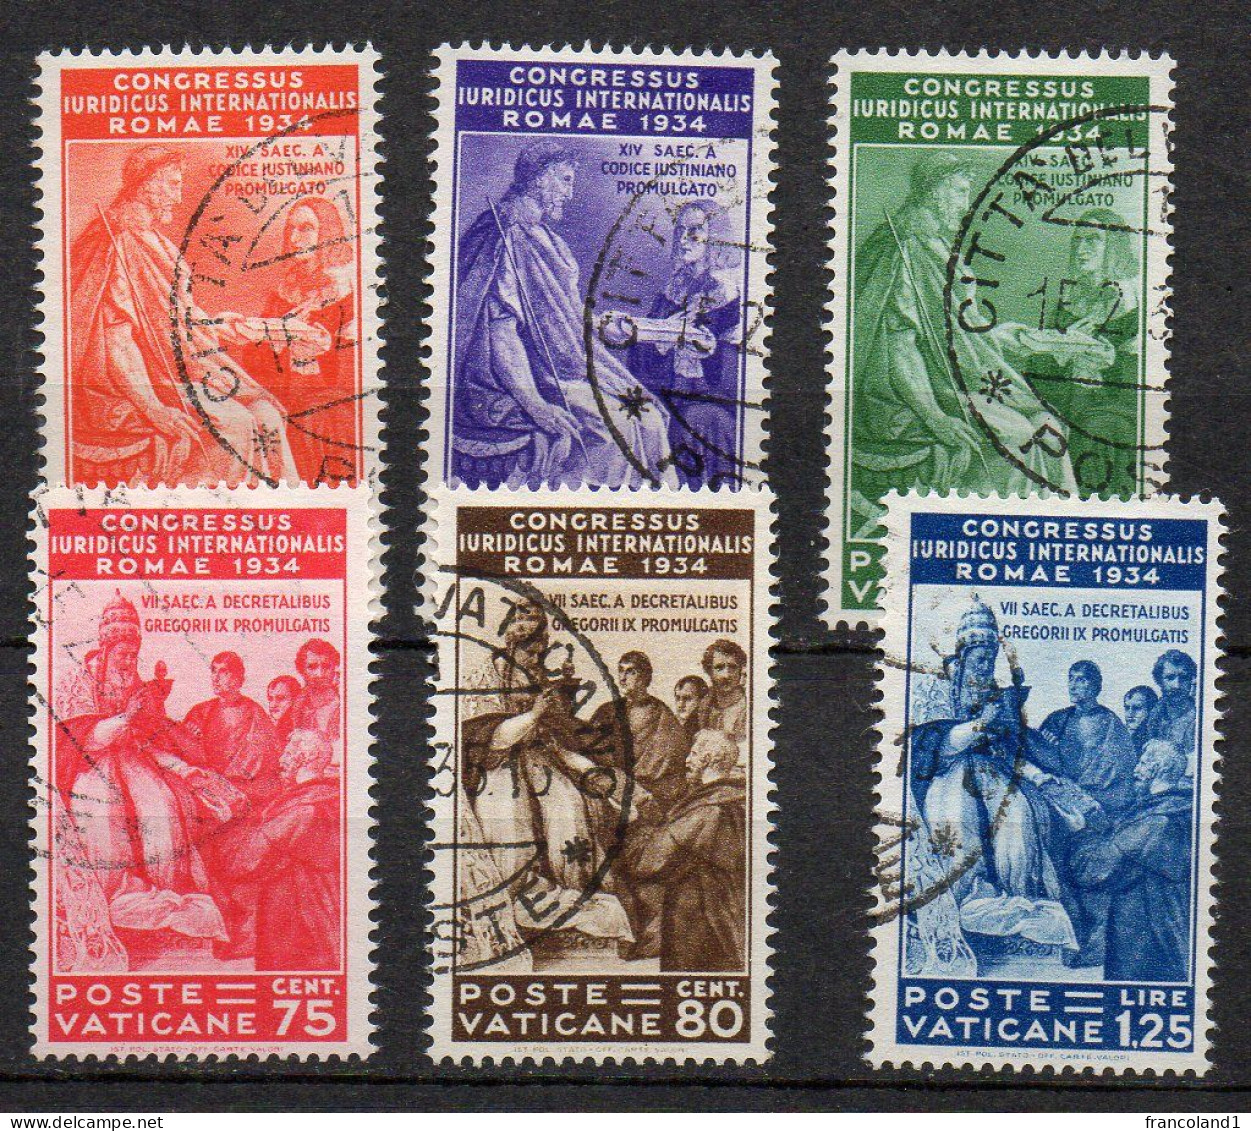 1935 Vaticano Congresso Giuridico N. 41 - 46 Serie Completa Timbrata Used Sassone 275 Euro - Used Stamps